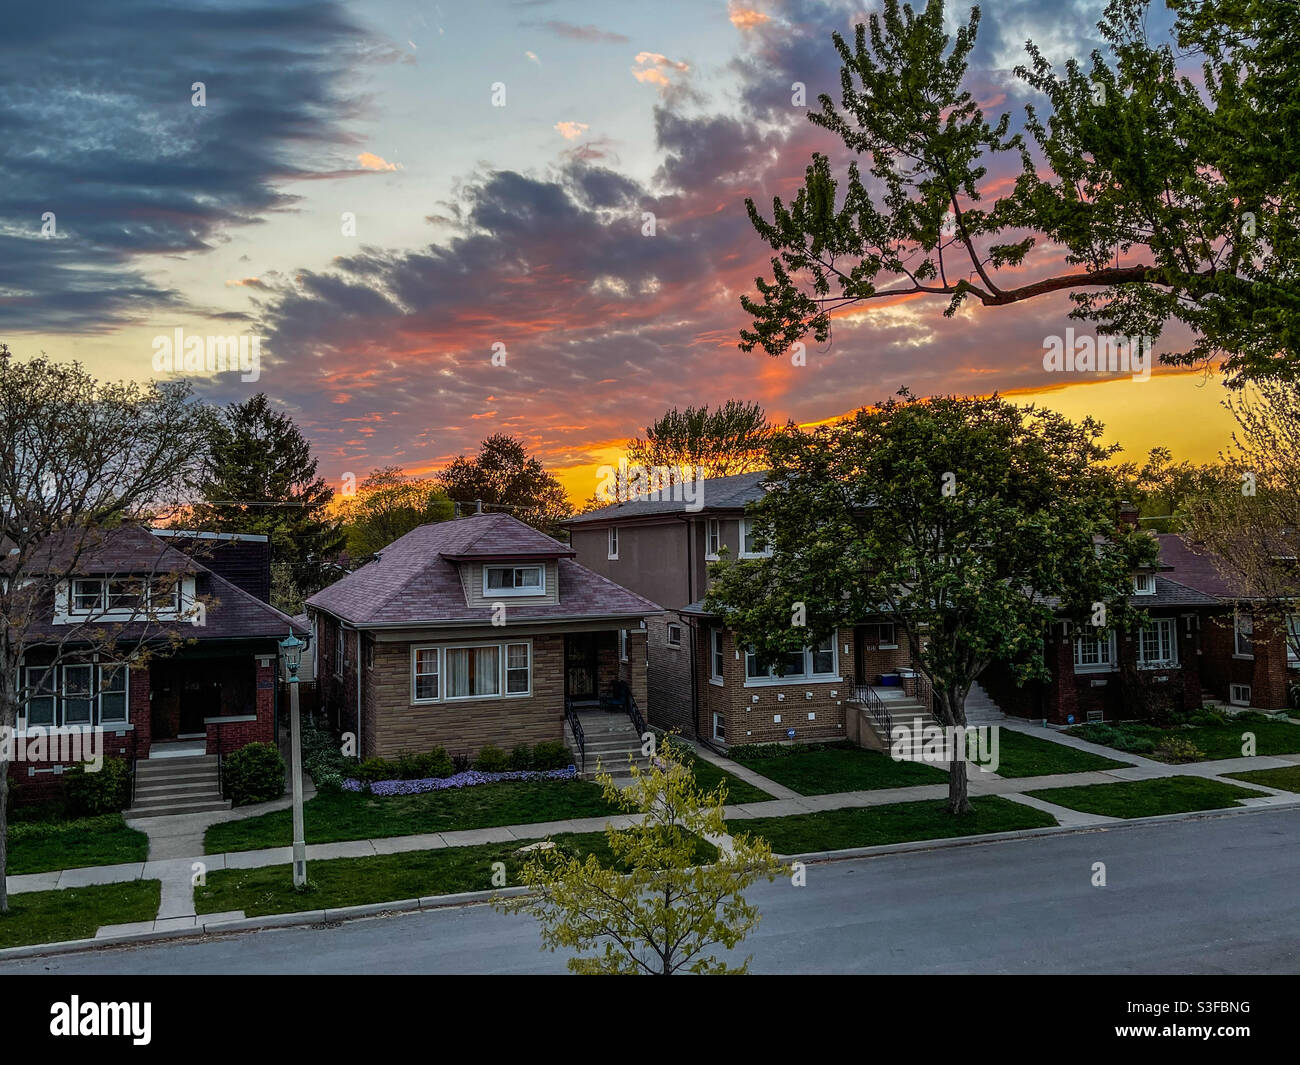 Des nuages sur des bungalows à Oak Park, dans le quartier de l'Illinois, illuminés par le soleil couchant. Banque D'Images